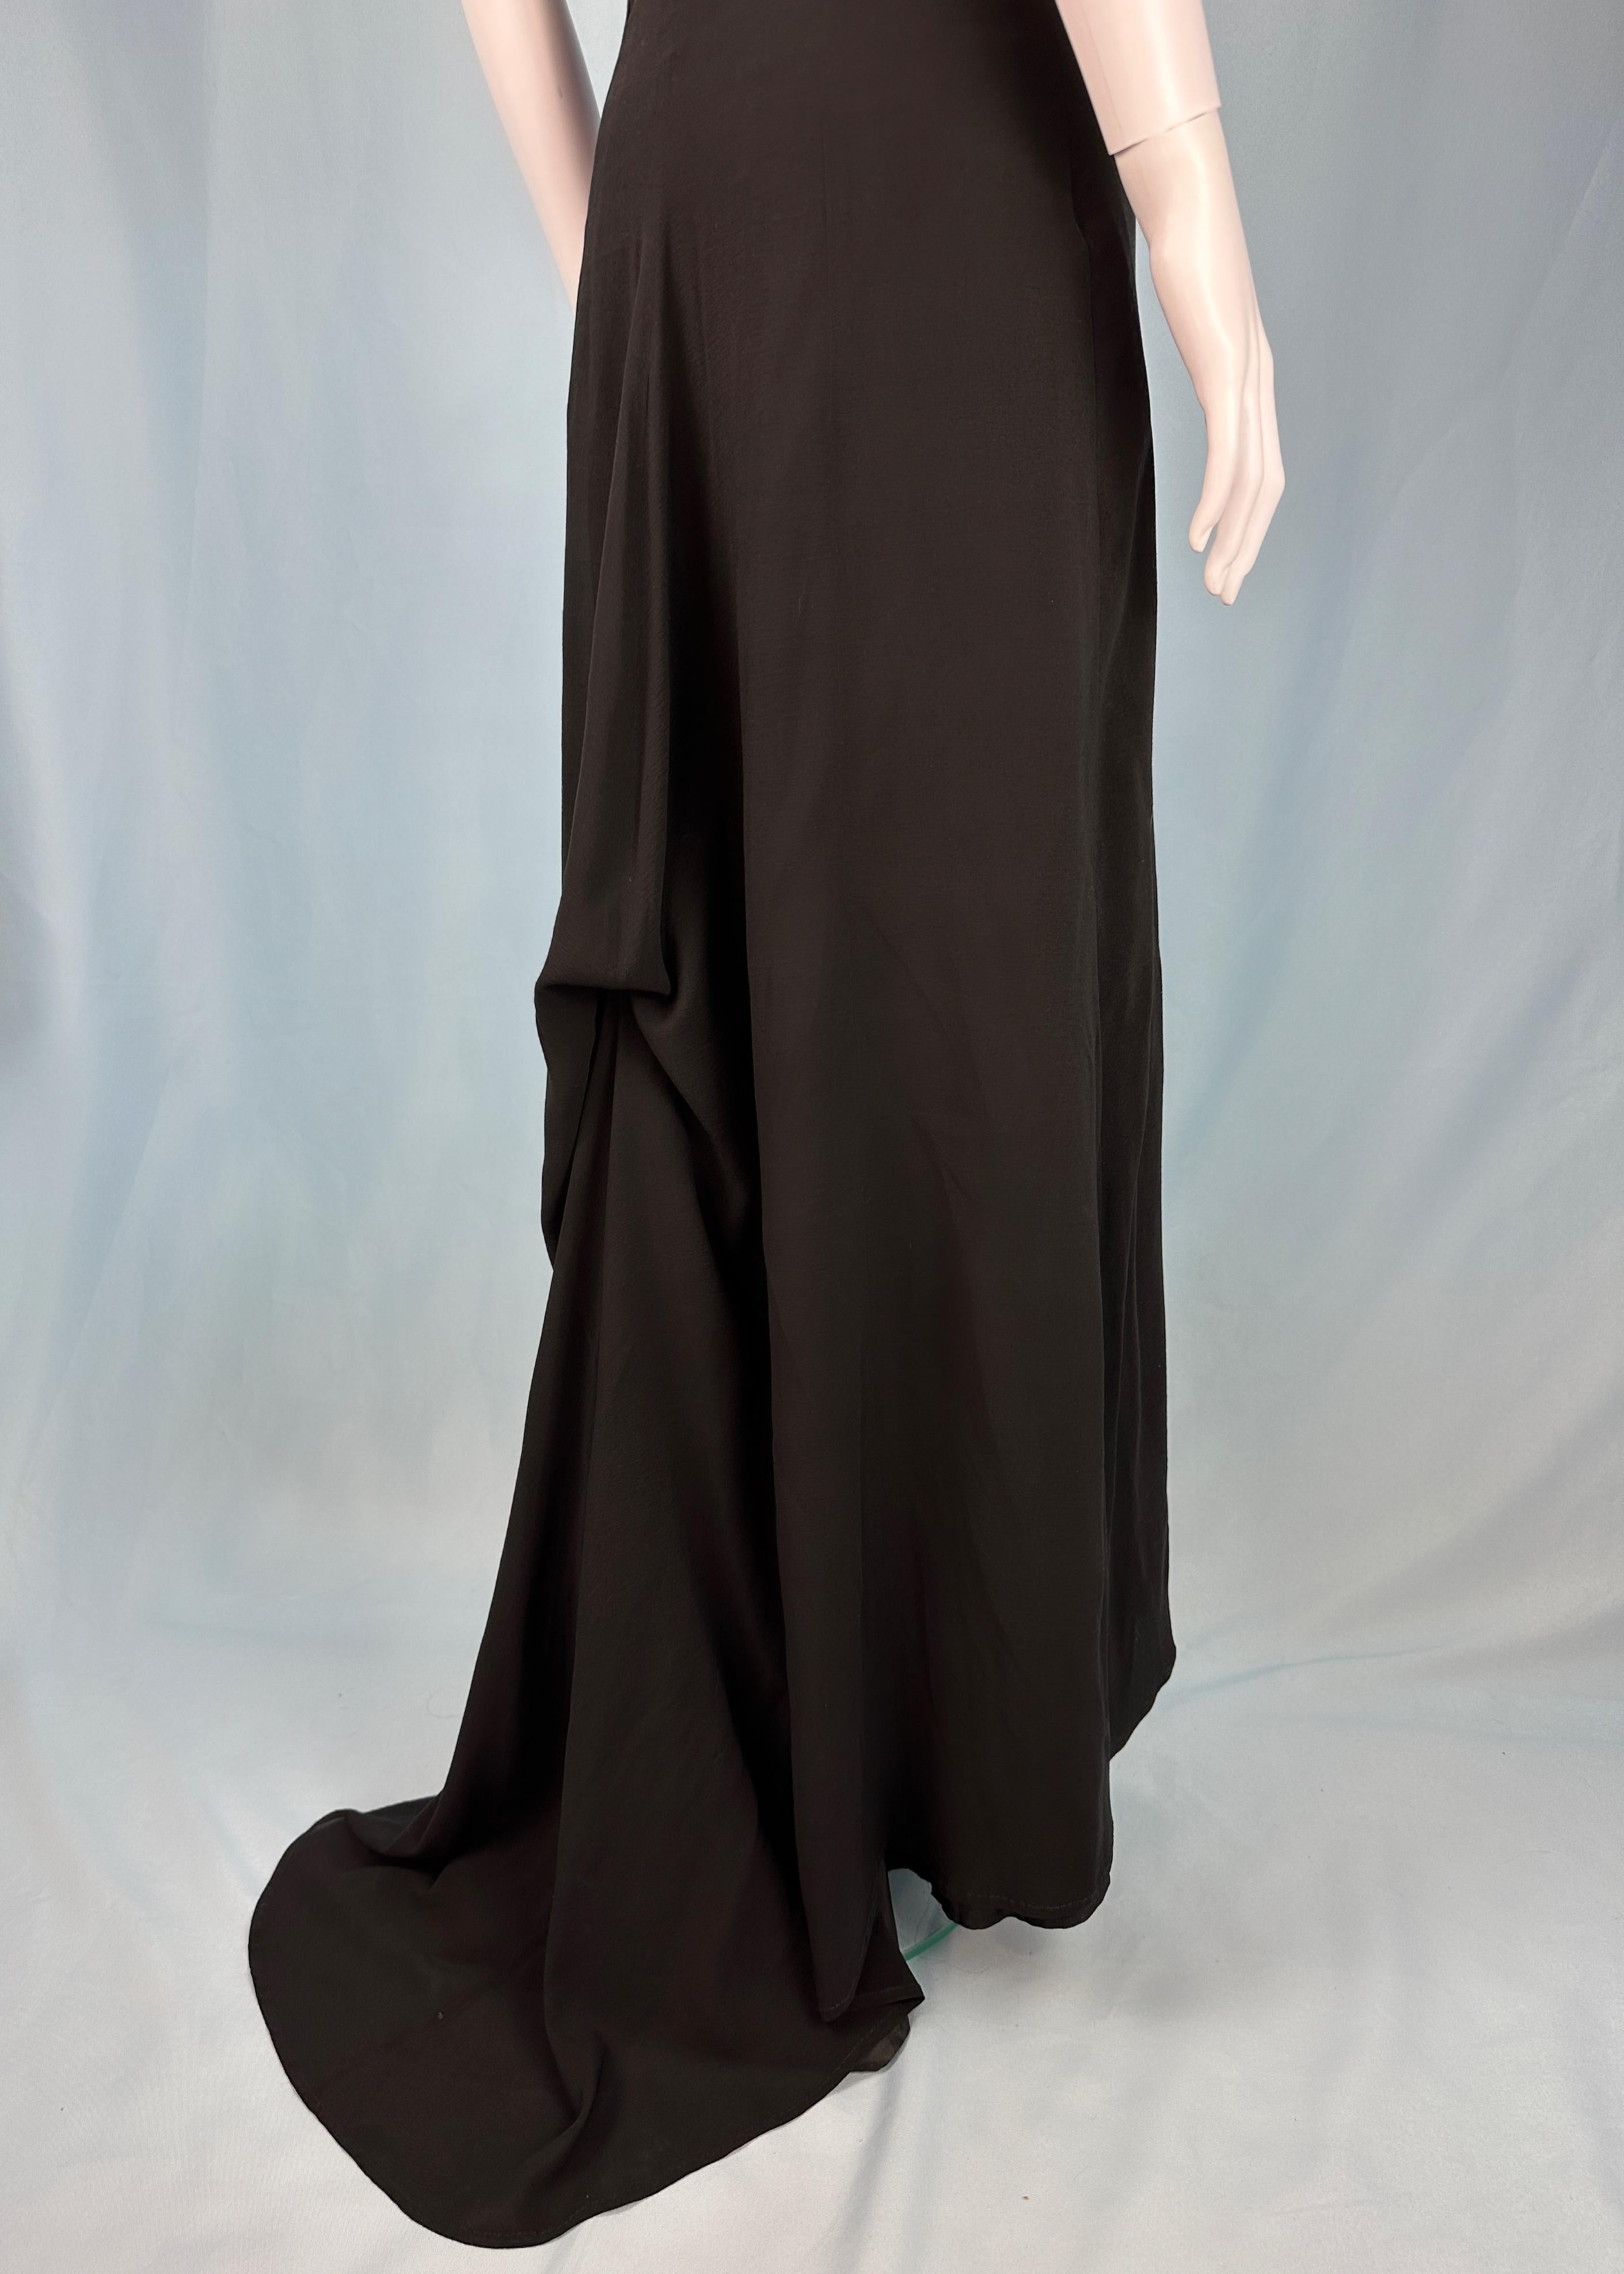 Dries Van Noten Spring 1999 Runway Black Silk Bustle Dress For Sale 2